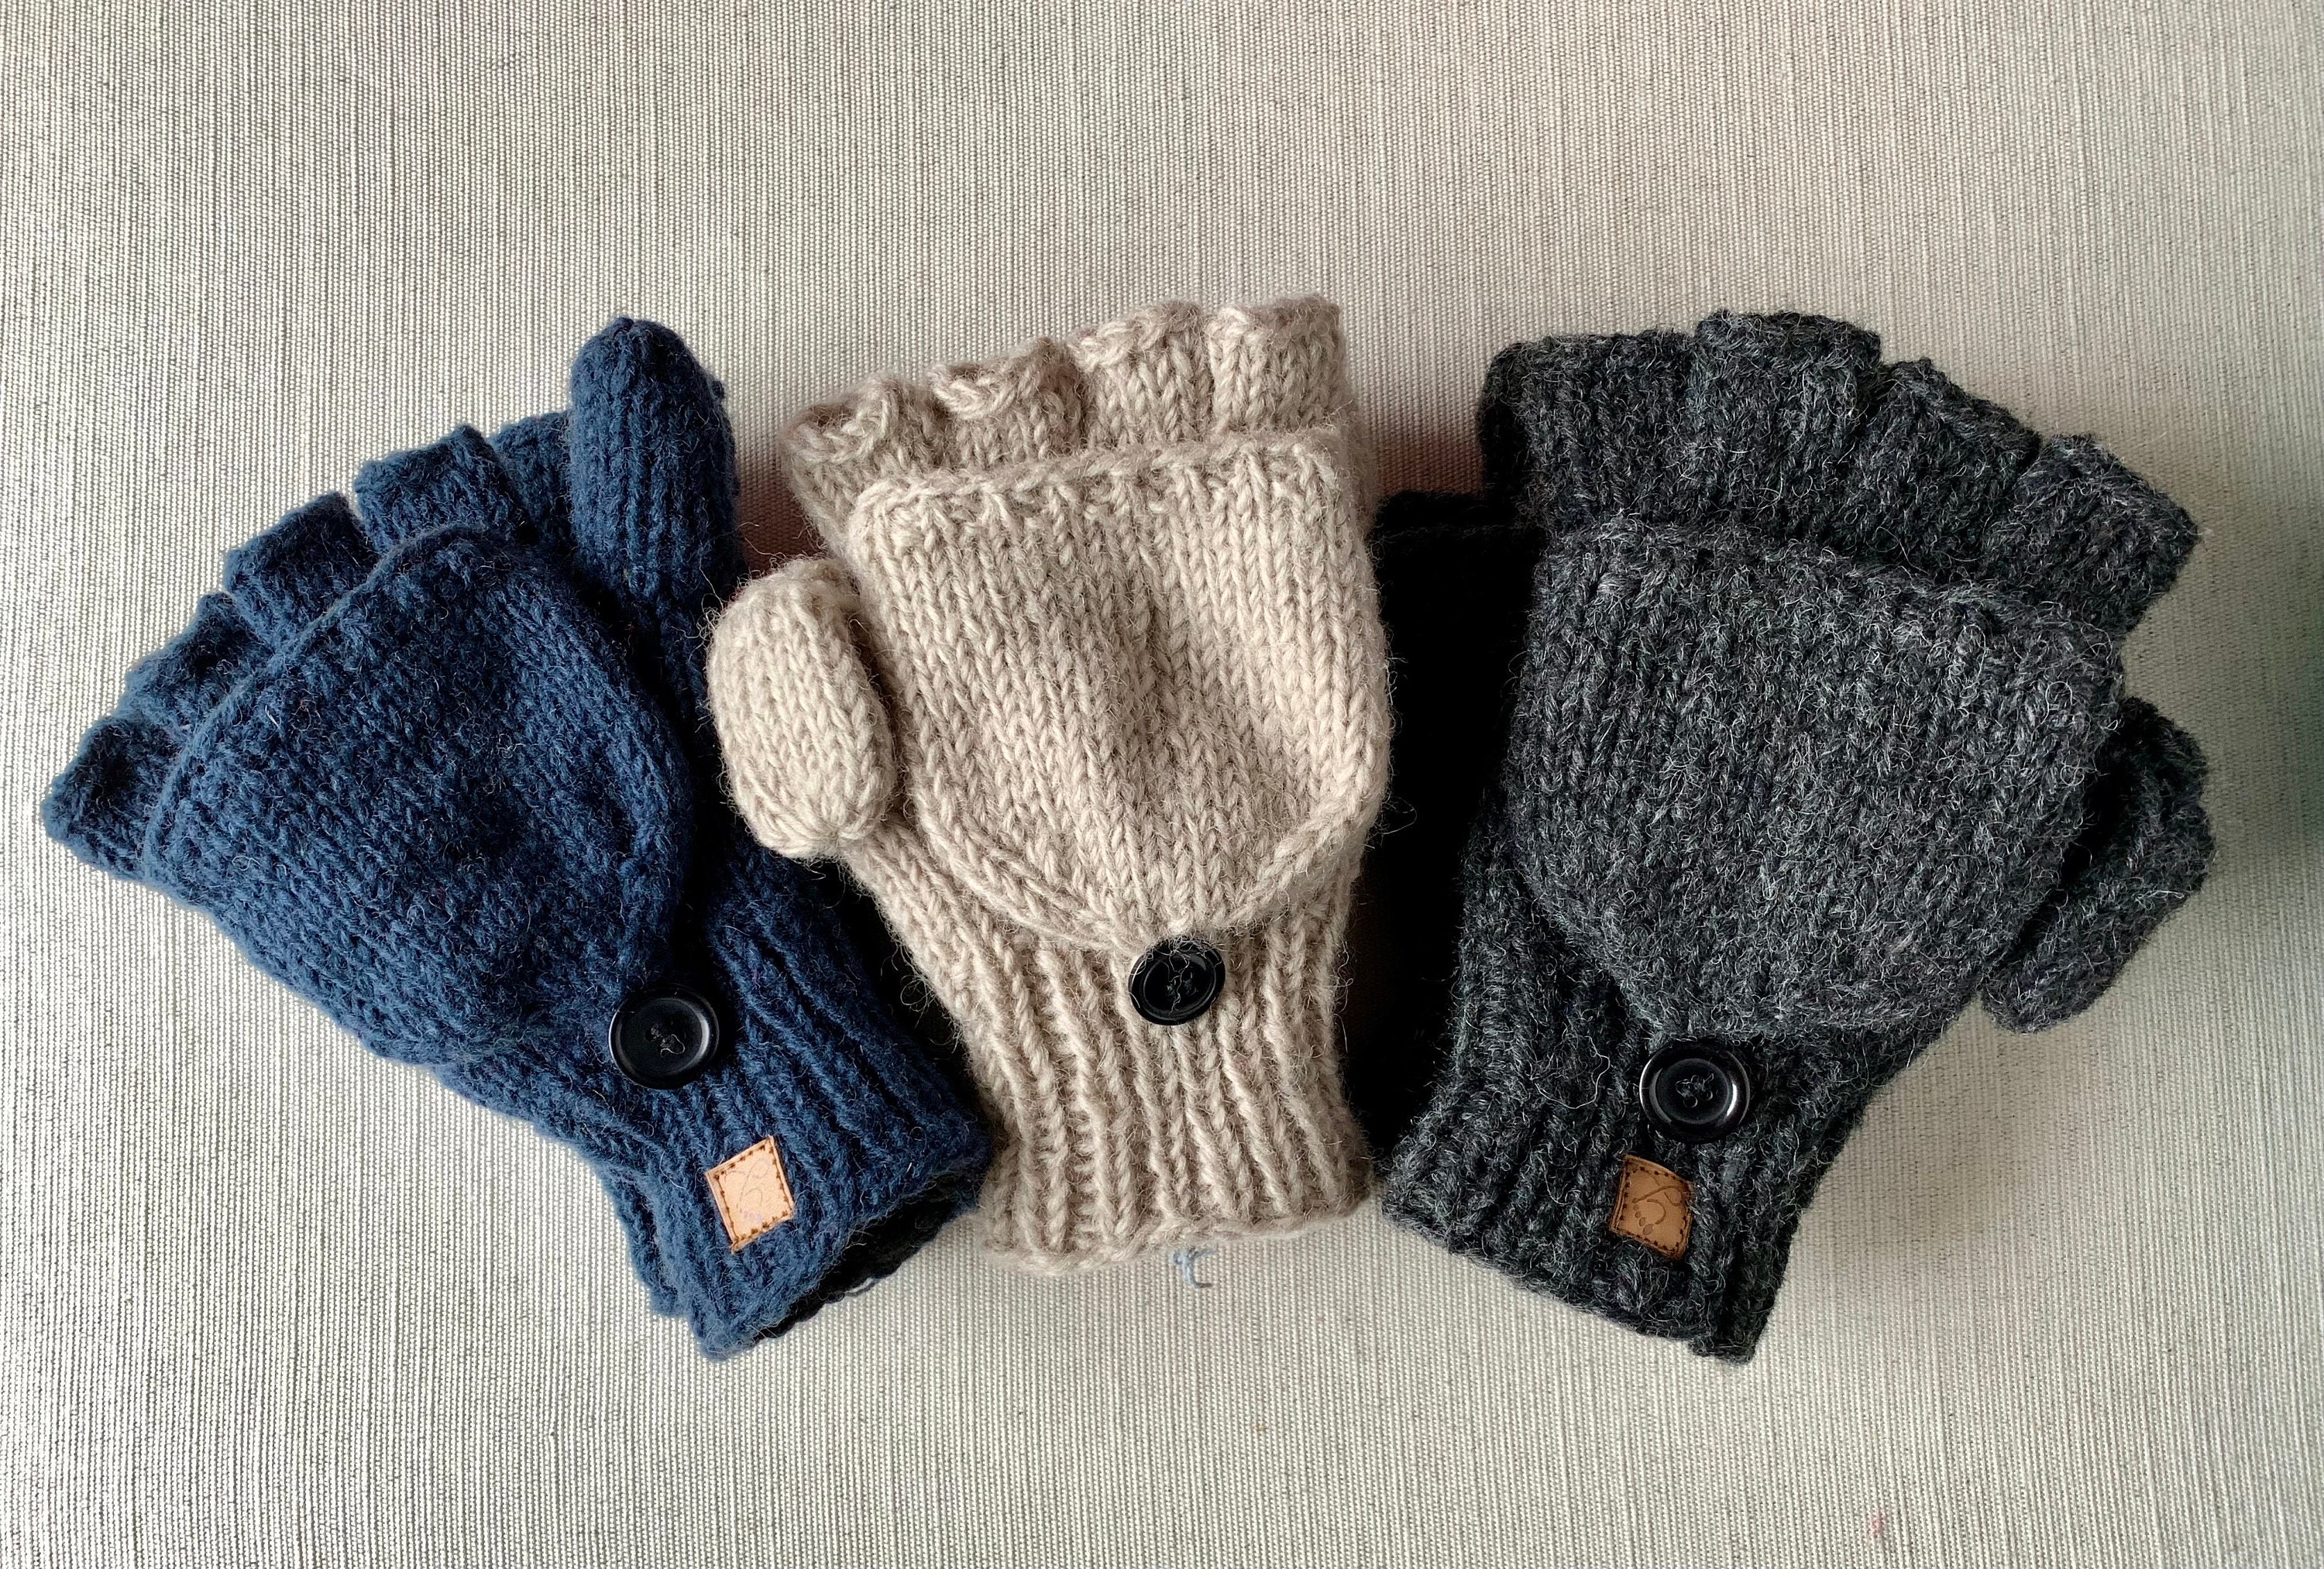 Modele pour moufles gants pour bébé en laine merinos et cachemire